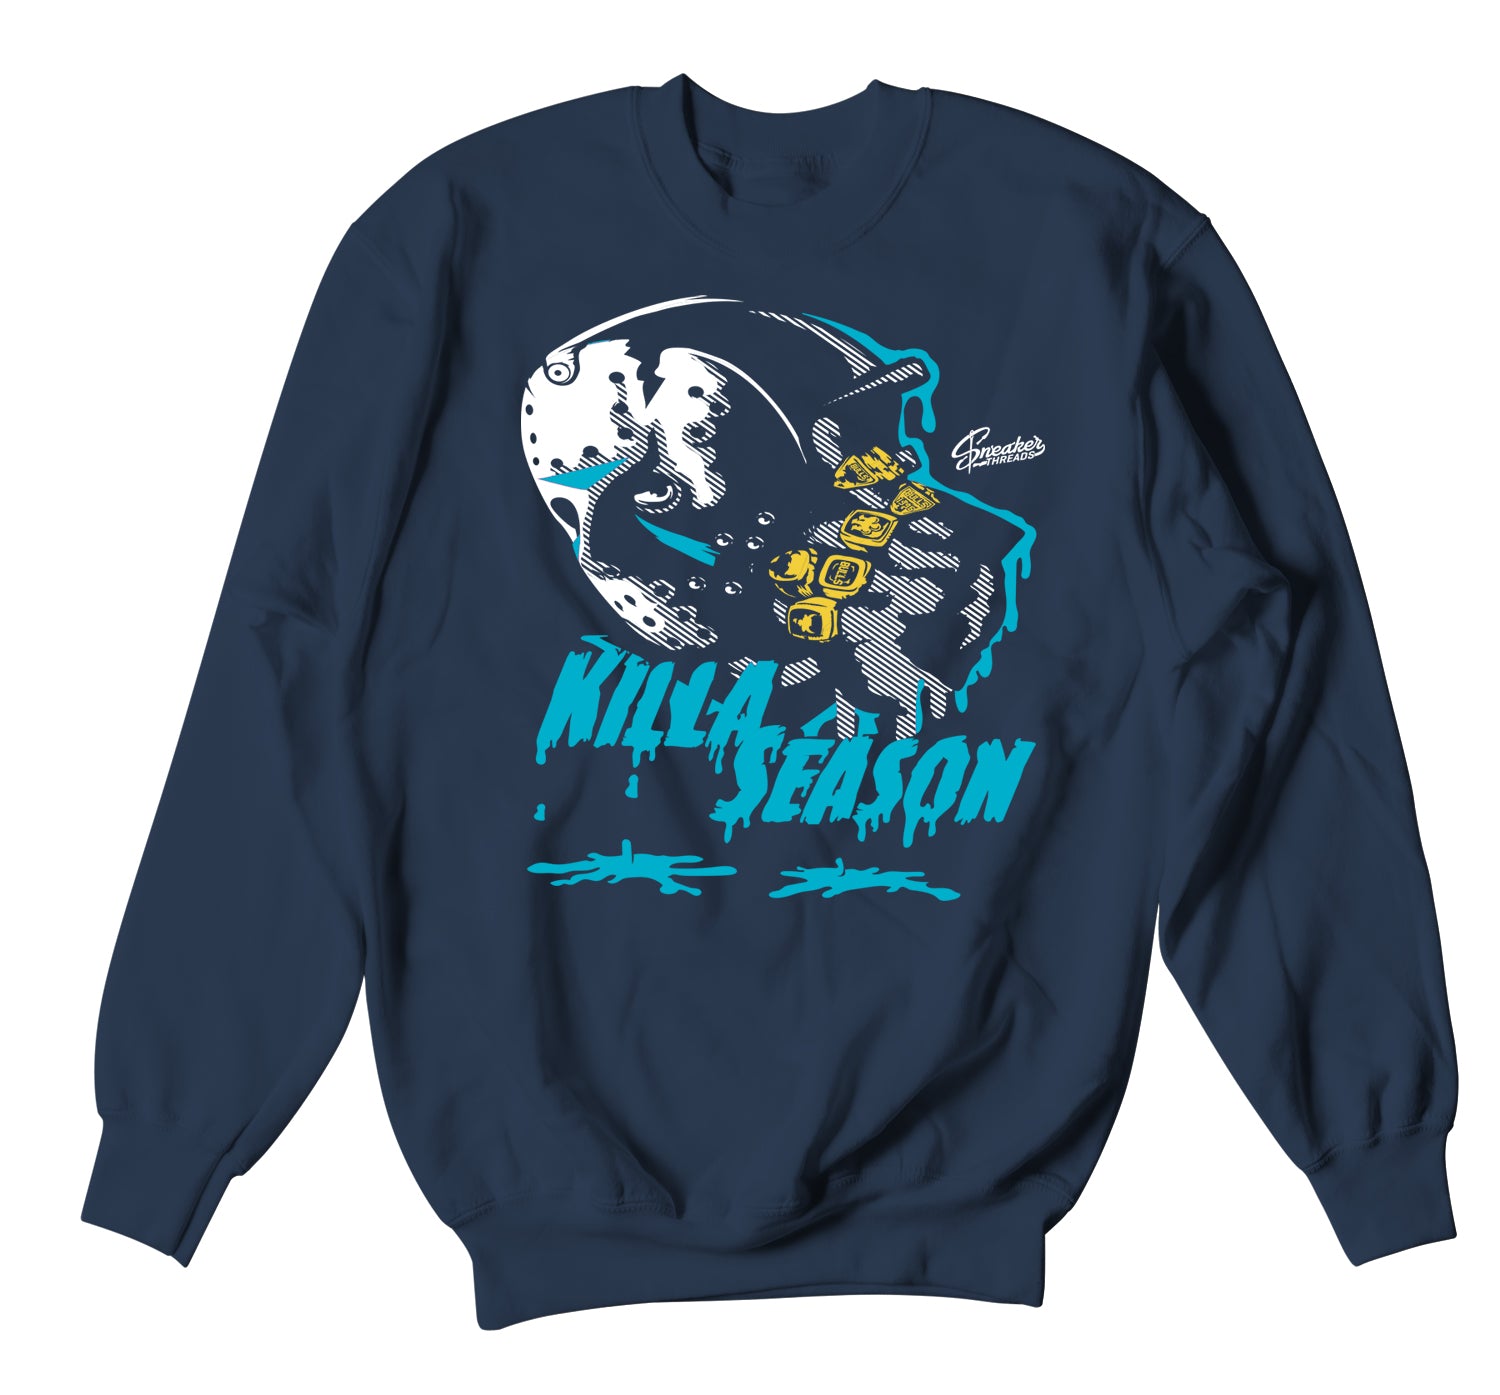 Retro 13 Obsidian Sweater - Killa Season - Navy